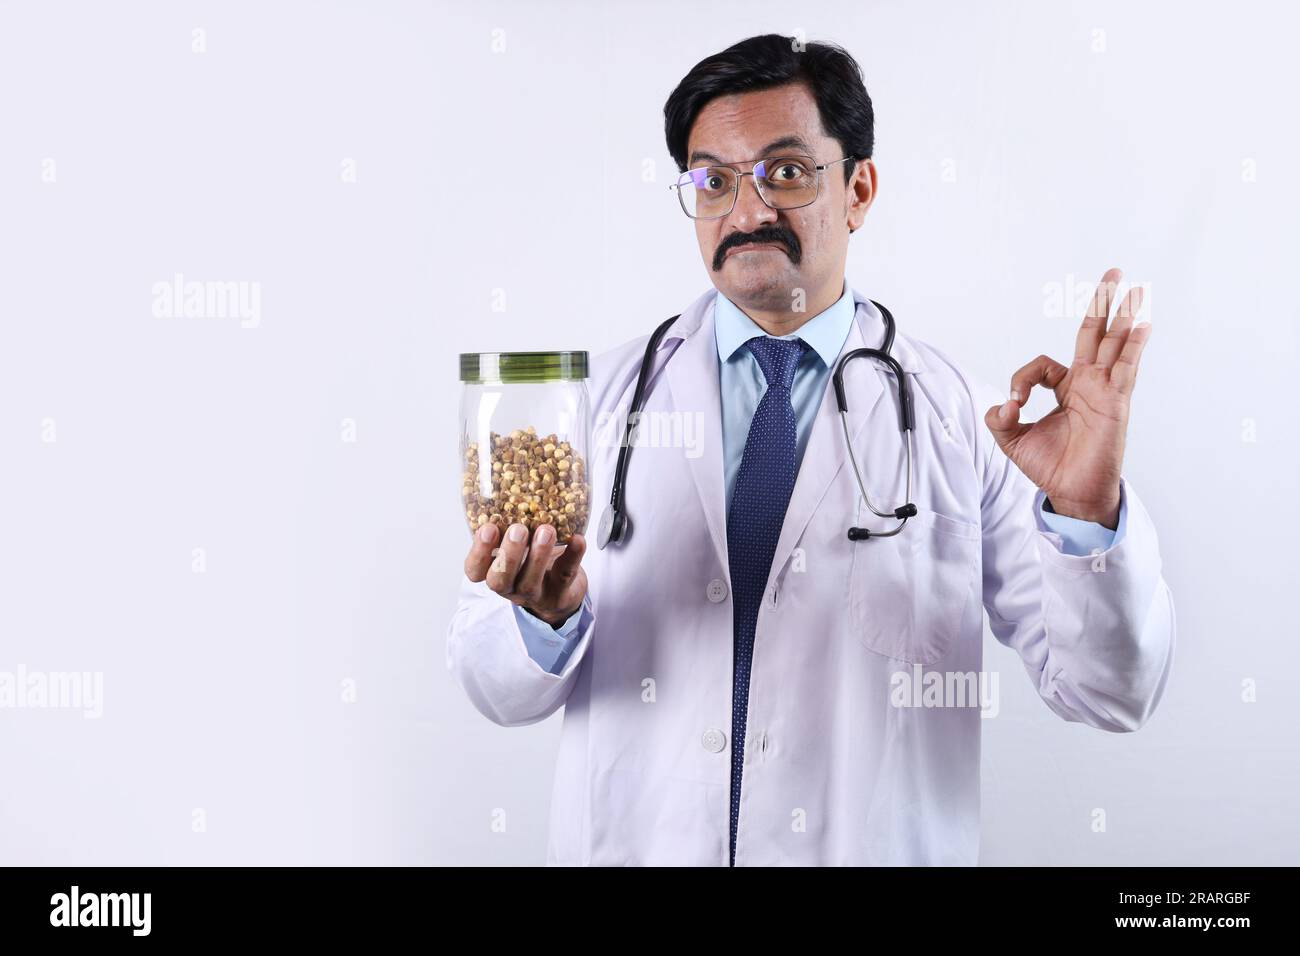 Docteur confiant indien tenant un pot en main et suggérant de manger frais et sain. Le docteur debout sur un fond blanc. Banque D'Images